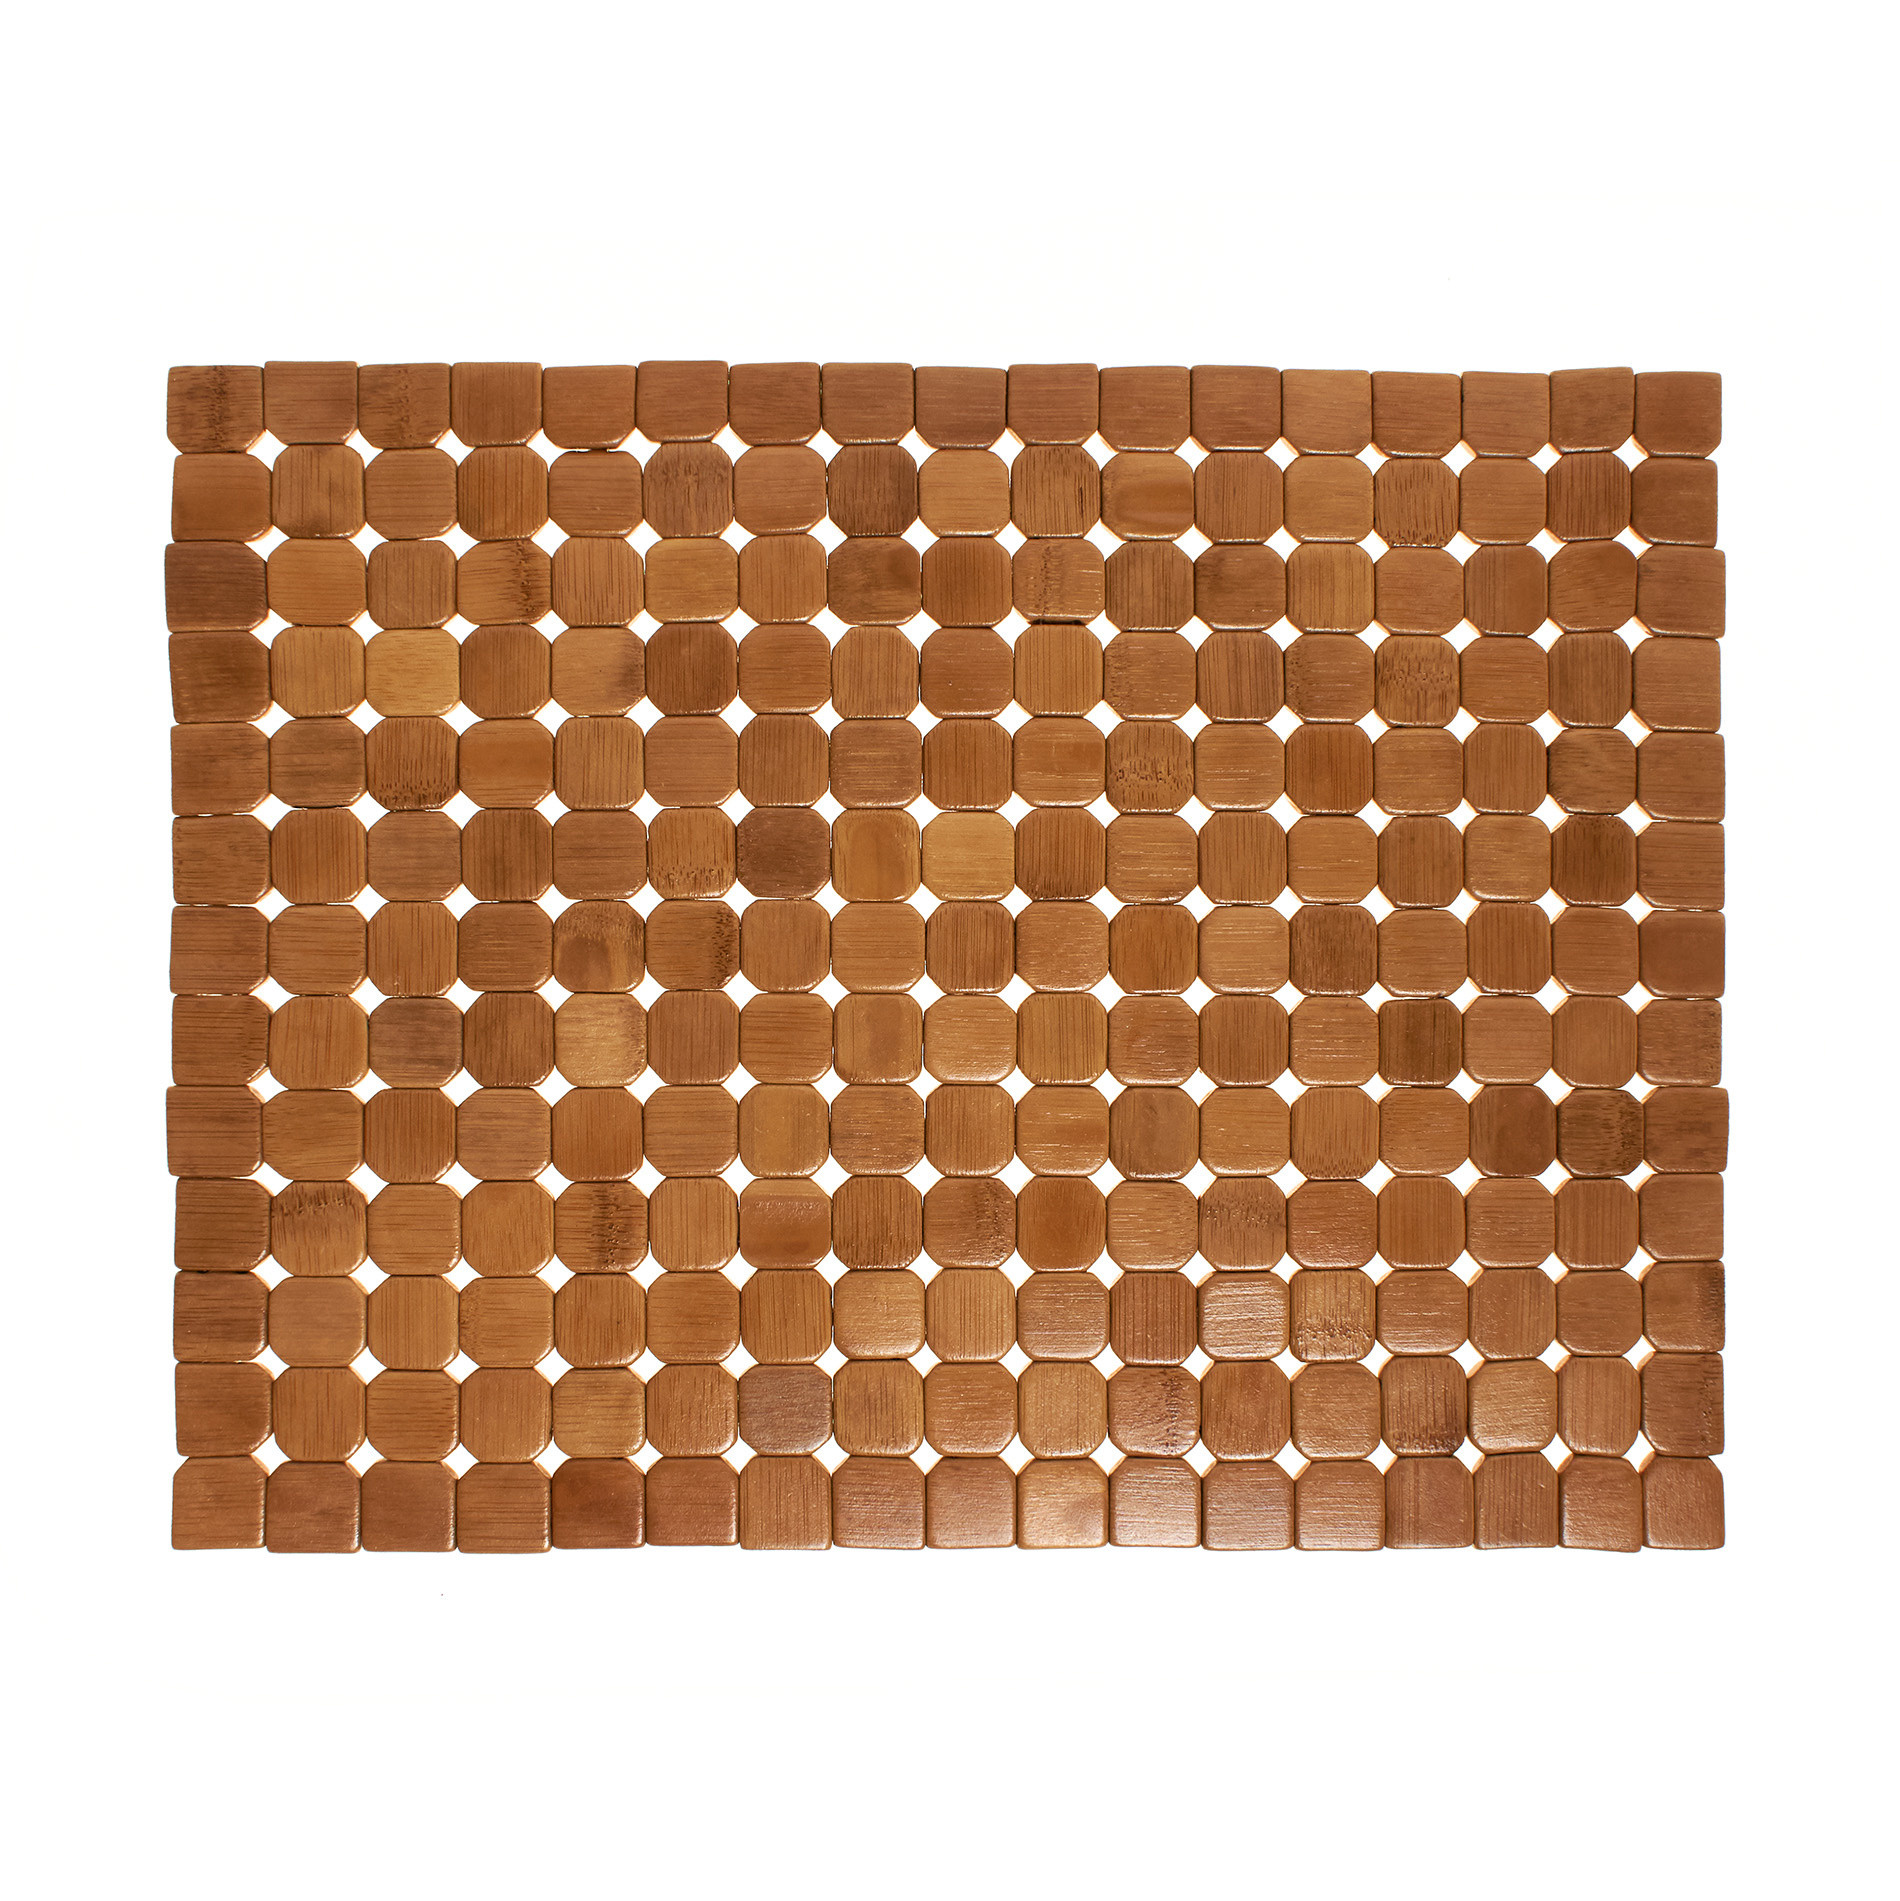 Расписной бамбуковый коврик для столовых приборов Coincasa, светло-коричневый фото